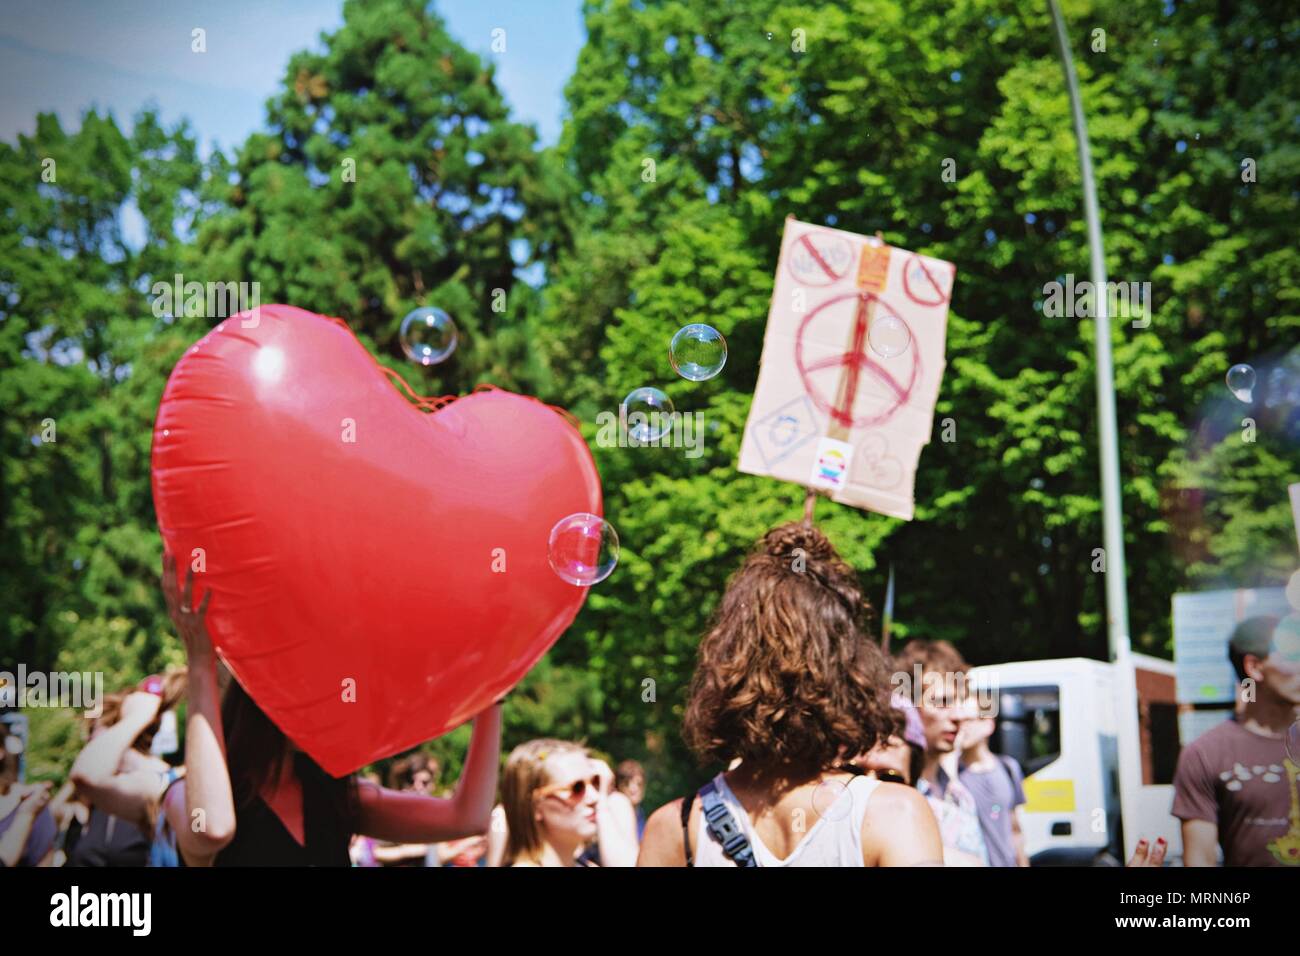 Berlin, Allemagne. 27 mai, 2018. Vu une femme tenant un ballon en forme de coeur pendant la manifestation.les amateurs de techno et à la lutte contre le racisme, les militants ont défilé à Berlin contre un rassemblement organisé par le parti d'extrême droite allemande, l'AFD. Plus de 70.000 personnes (selon les organisateurs) ont pris les rues de Berlin avec une grande fête organisée par certains des plus célèbres clubs techno de Berlin. Plusieurs démos compteur ont eu lieu le long de la capitale Allemande pour protester contre le rallye de l'AFD qui a commencé à la gare principale et terminé à la Brandenburger Tor avec des centaines de participants. (Crédit Imag Banque D'Images